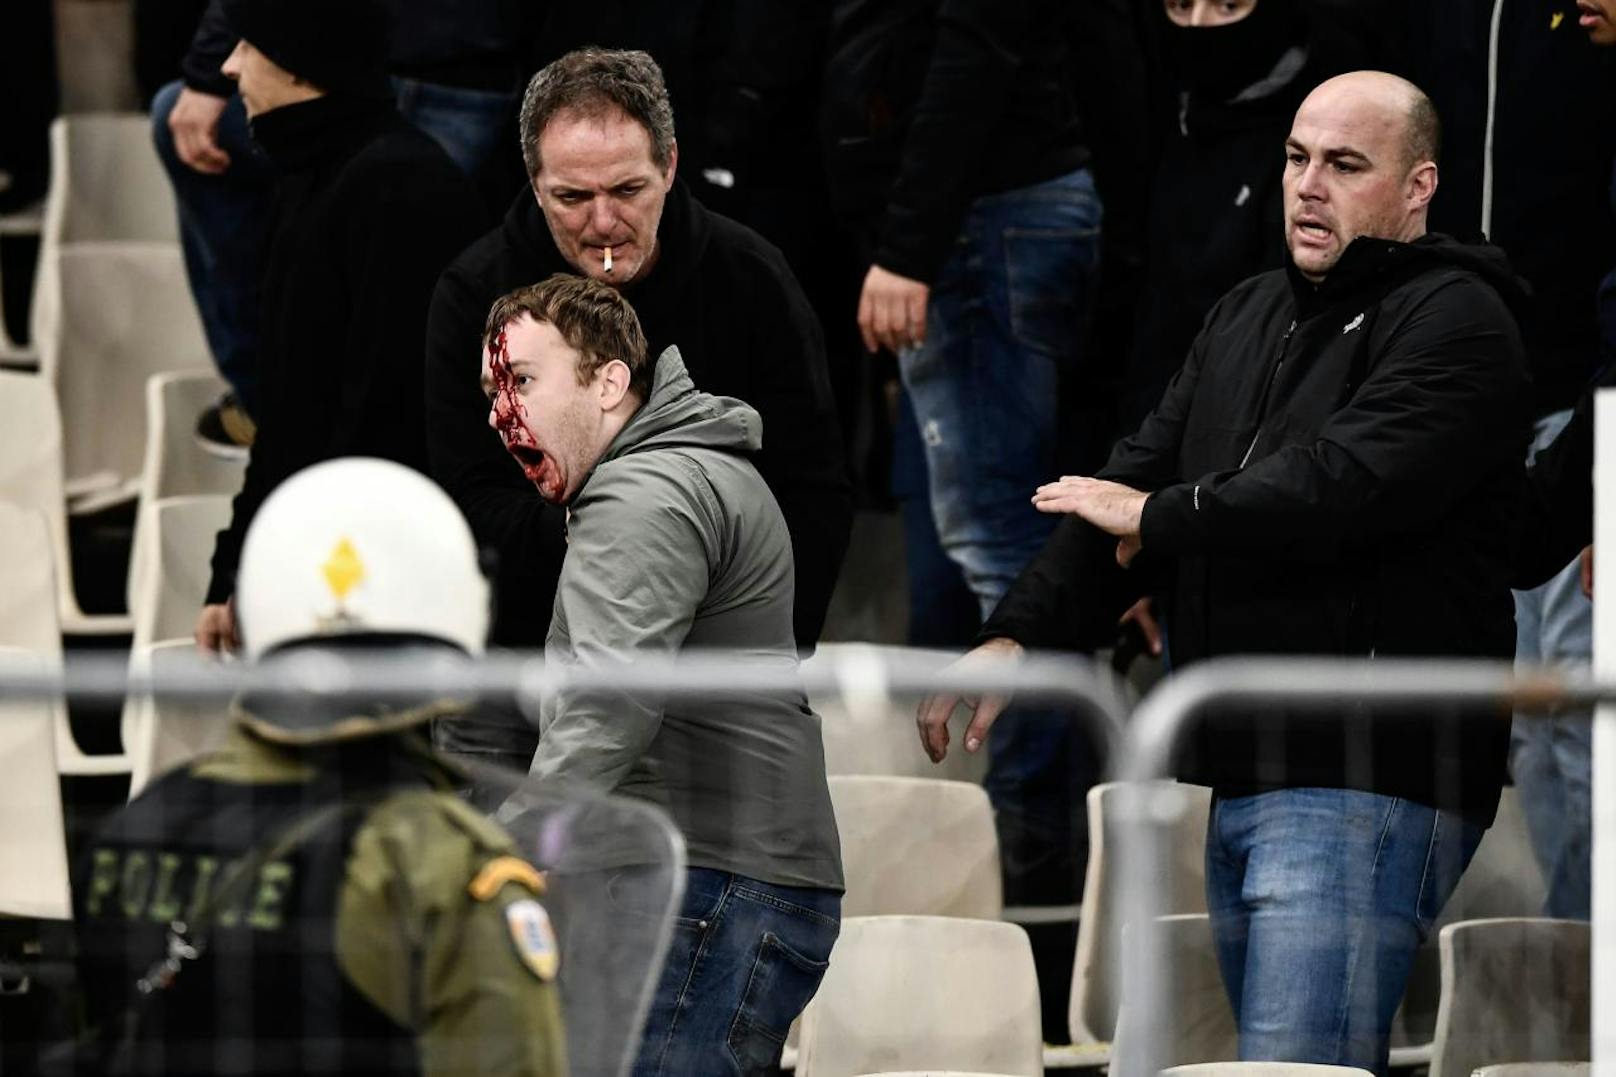 Ajax-Fans sind nach dem Hooligan-Angriff blutüberströmt.